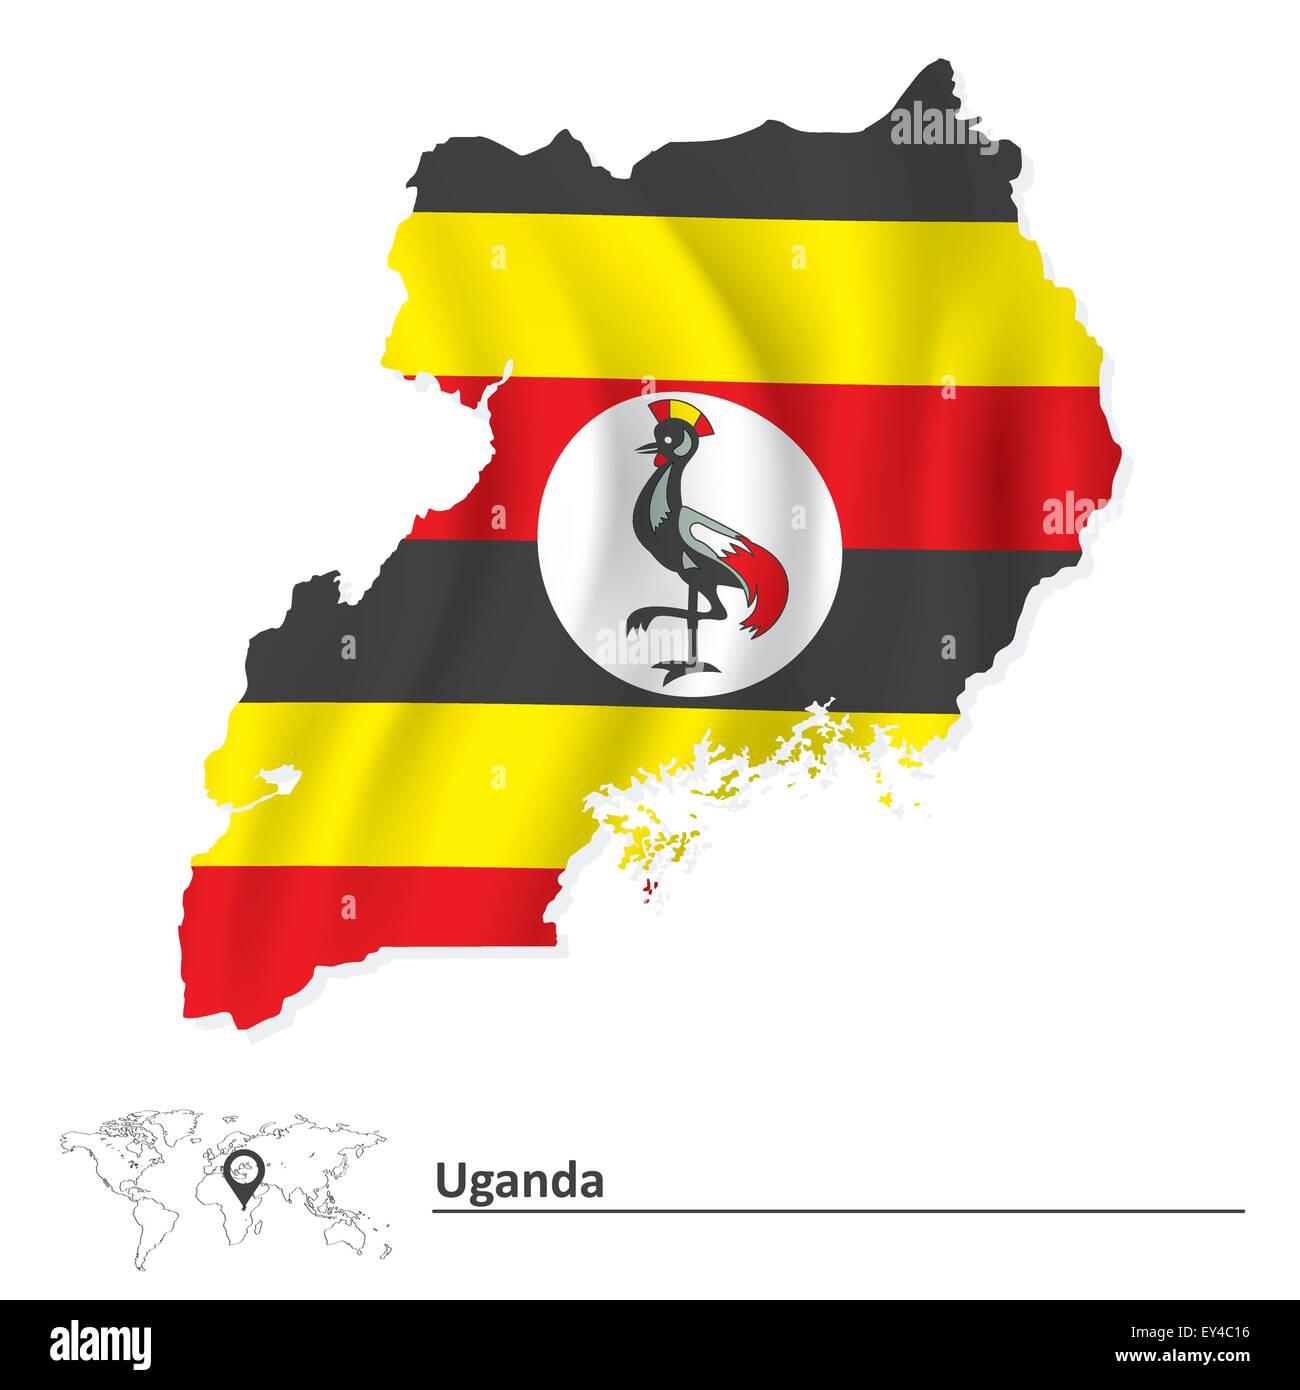 Karte von Uganda mit Fahne - Vektor-illustration Stock Vektor